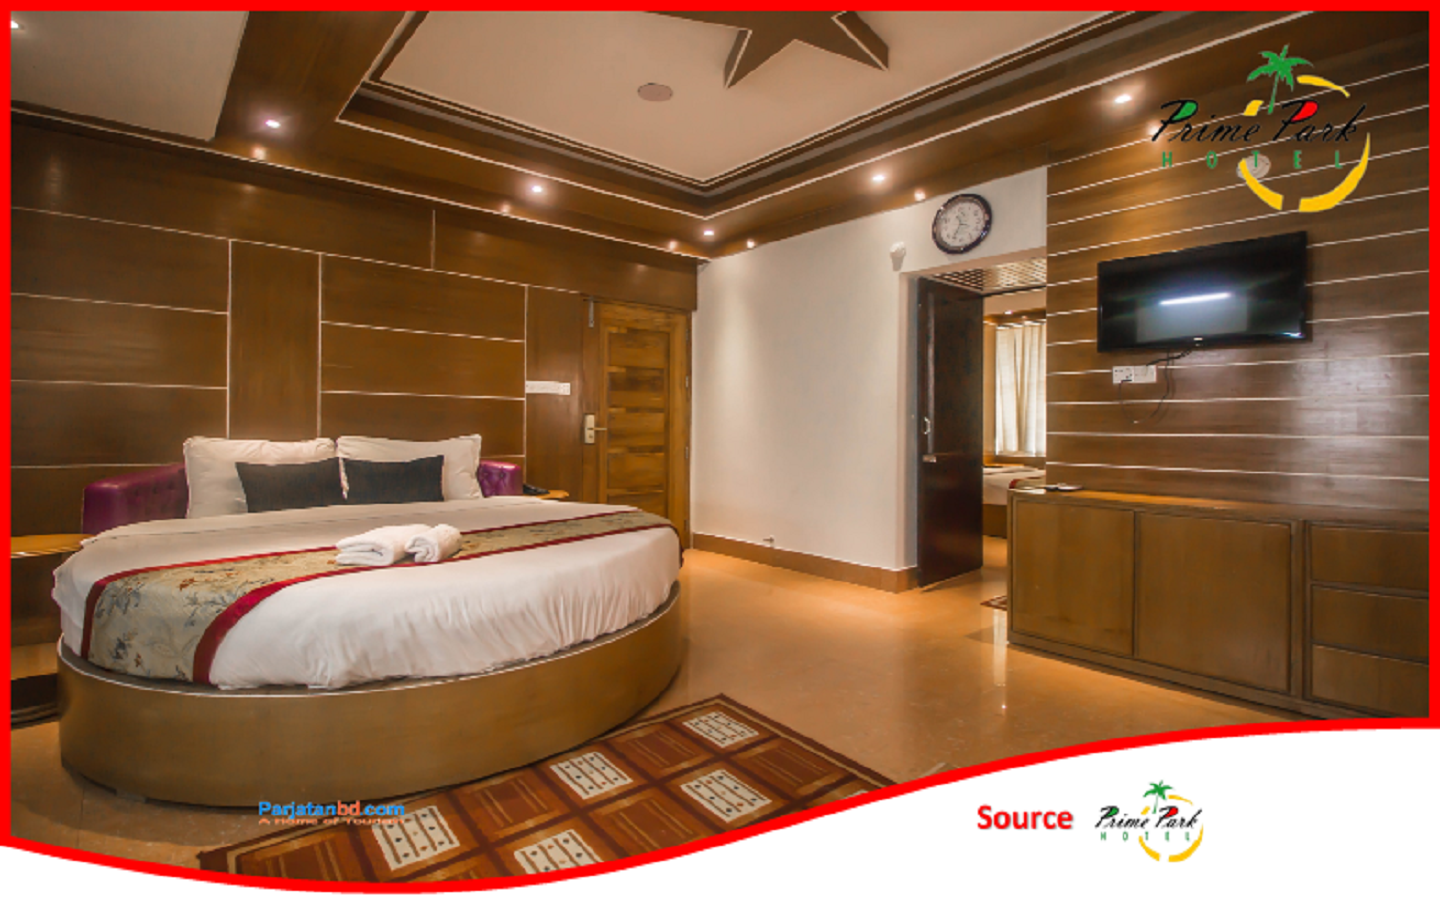 Room Executive Premium Suite -1, Prime Park Hotel, Coxs Bazar